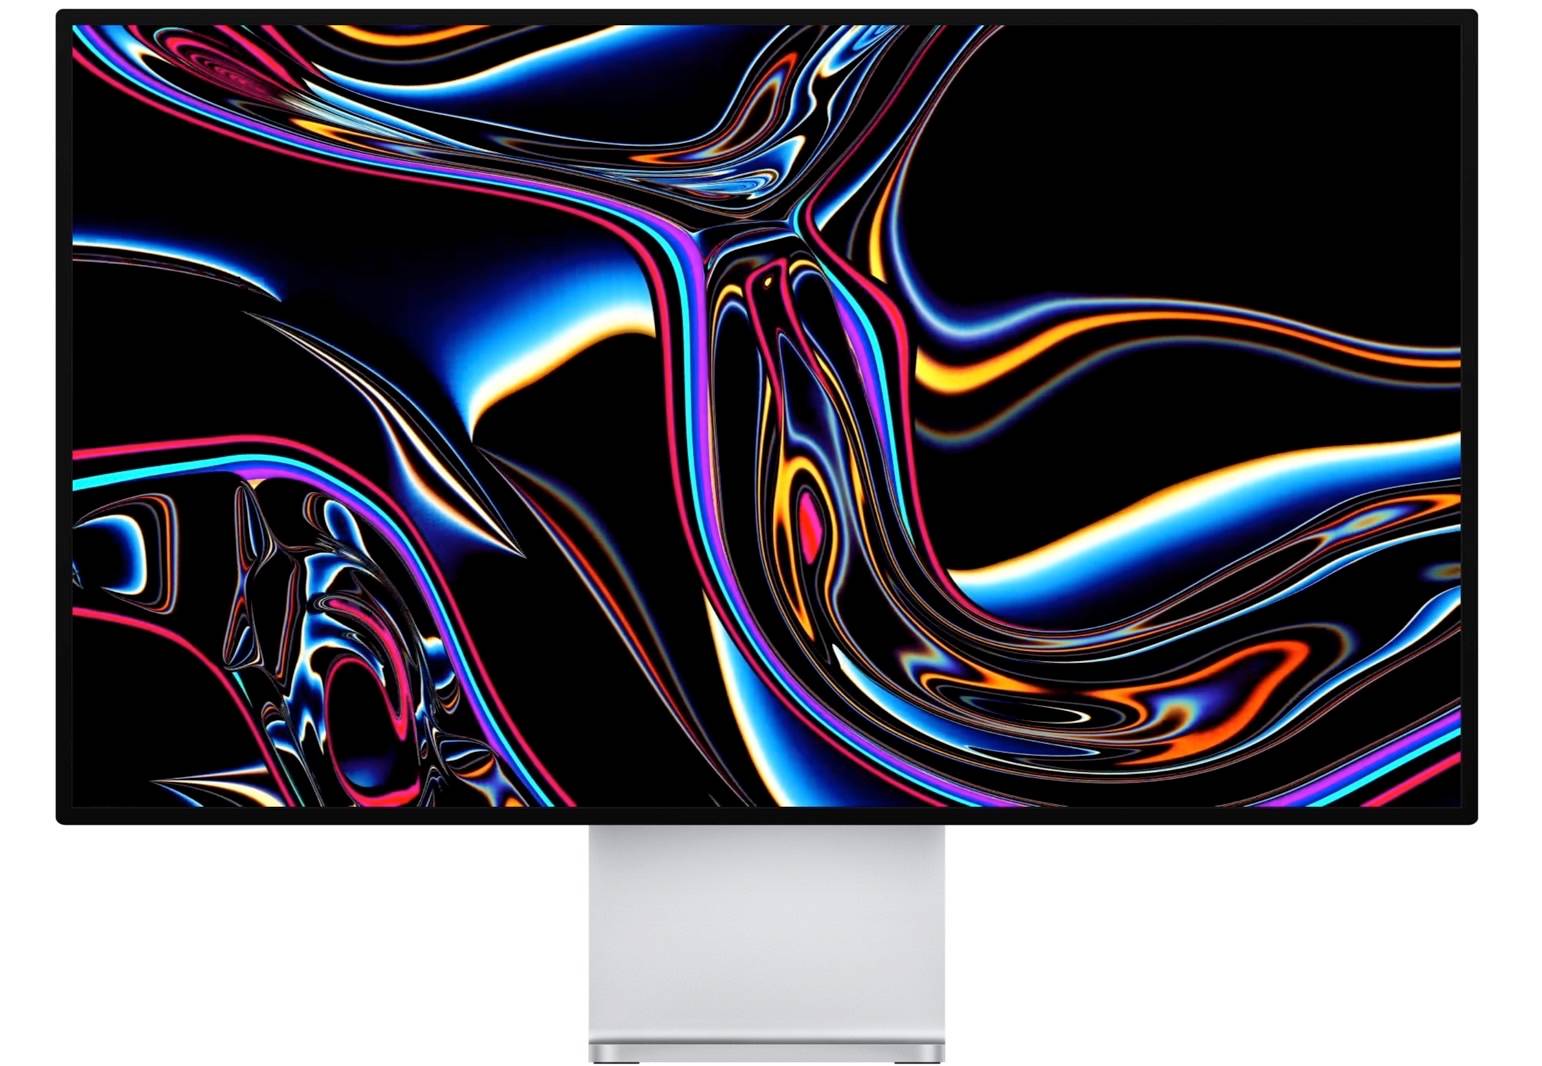 Ликер говорит Appleновый iMac получит это неожиданное обновление